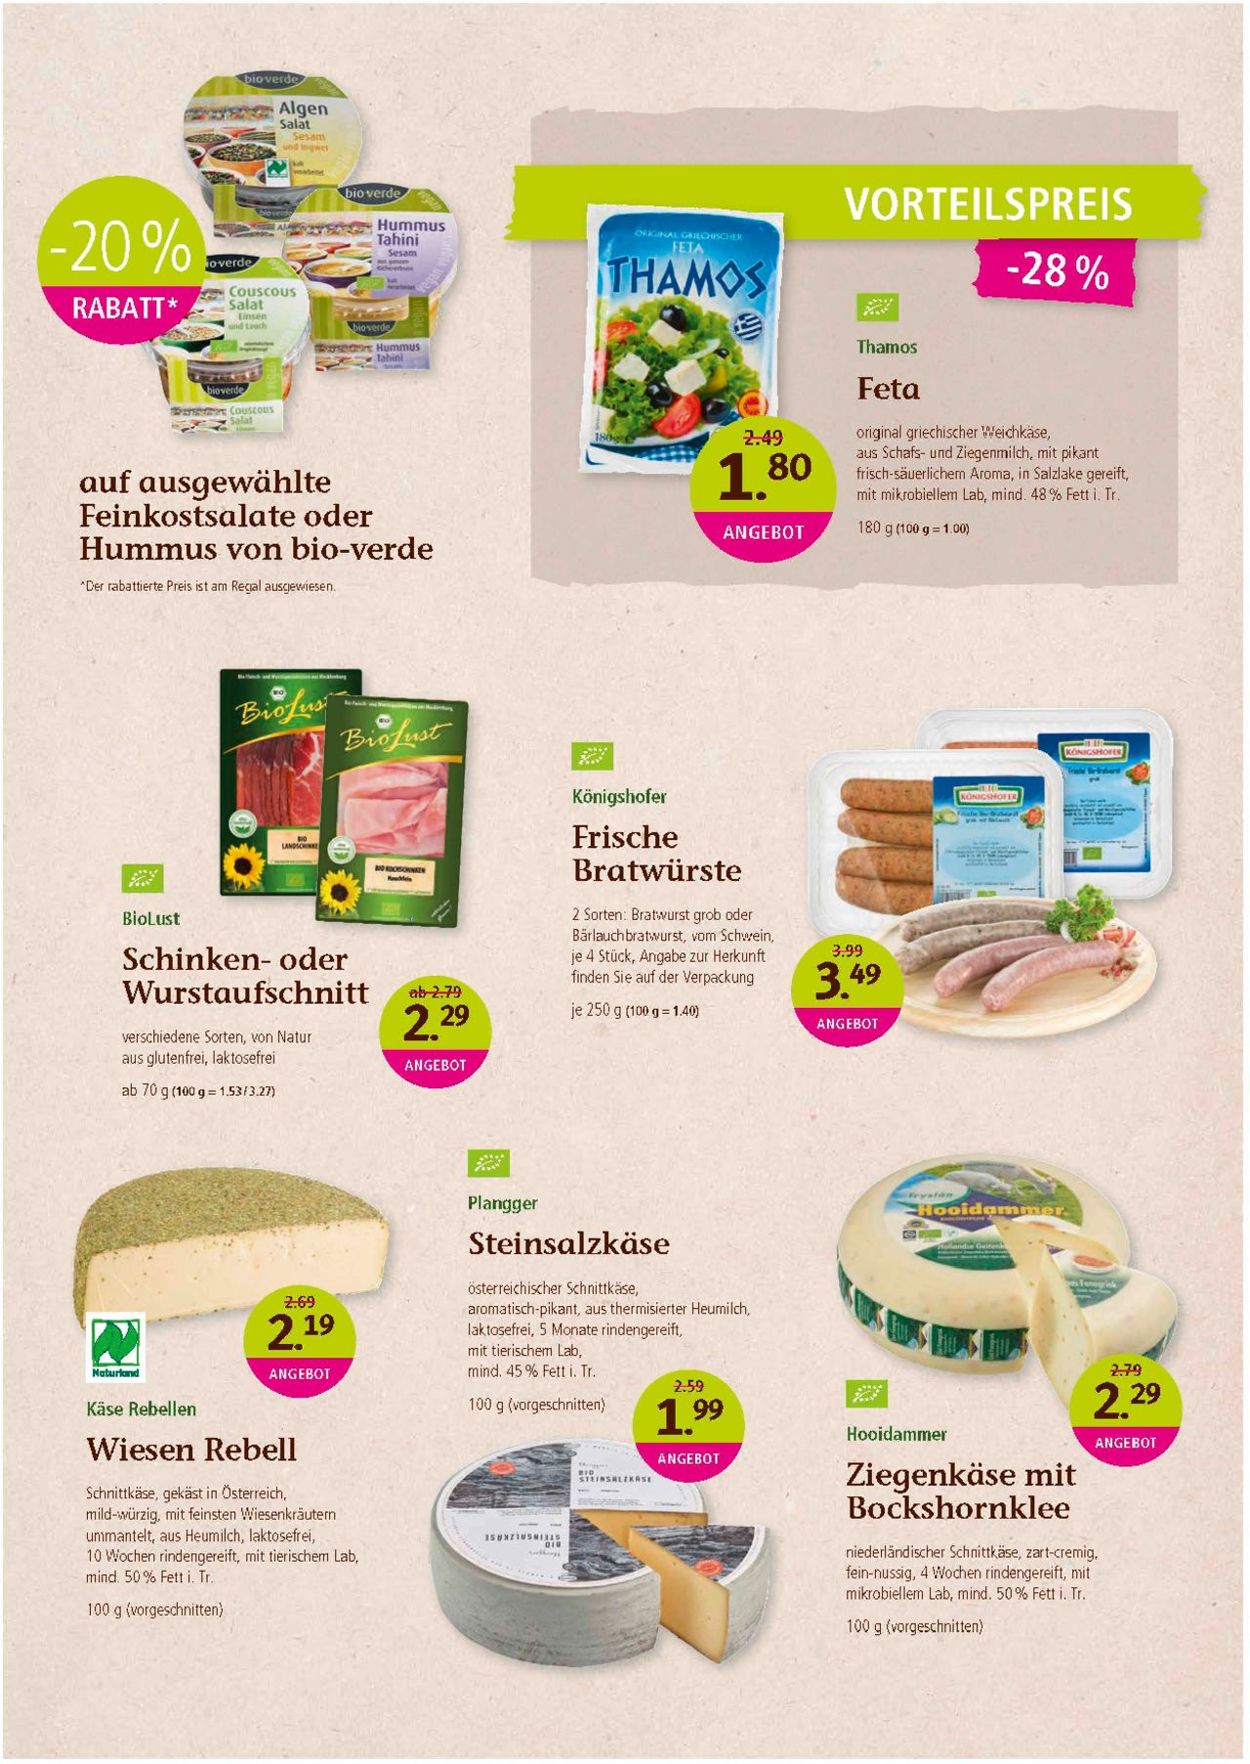 Denn's Biomarkt Prospekt ab 08.05.2019